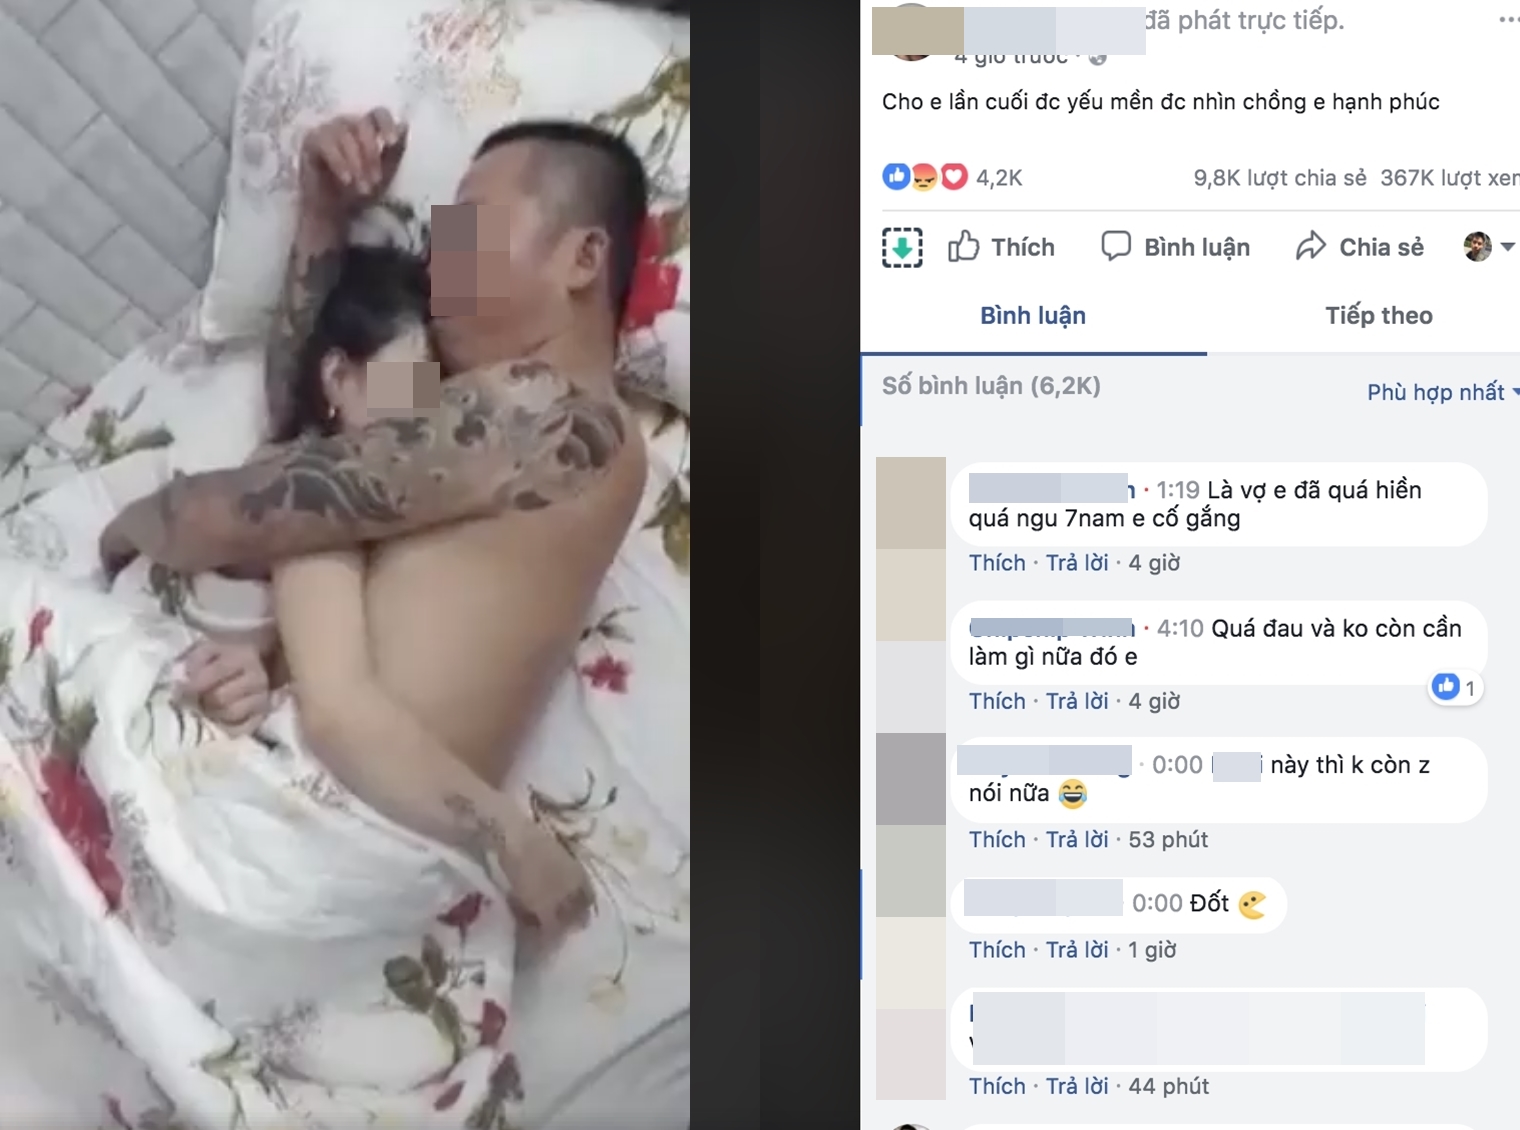 Tiết lộ sốc về người chồng 'mây mưa' với bồ nhí để vợ uất ức livestream lên Facebook - Ảnh 1